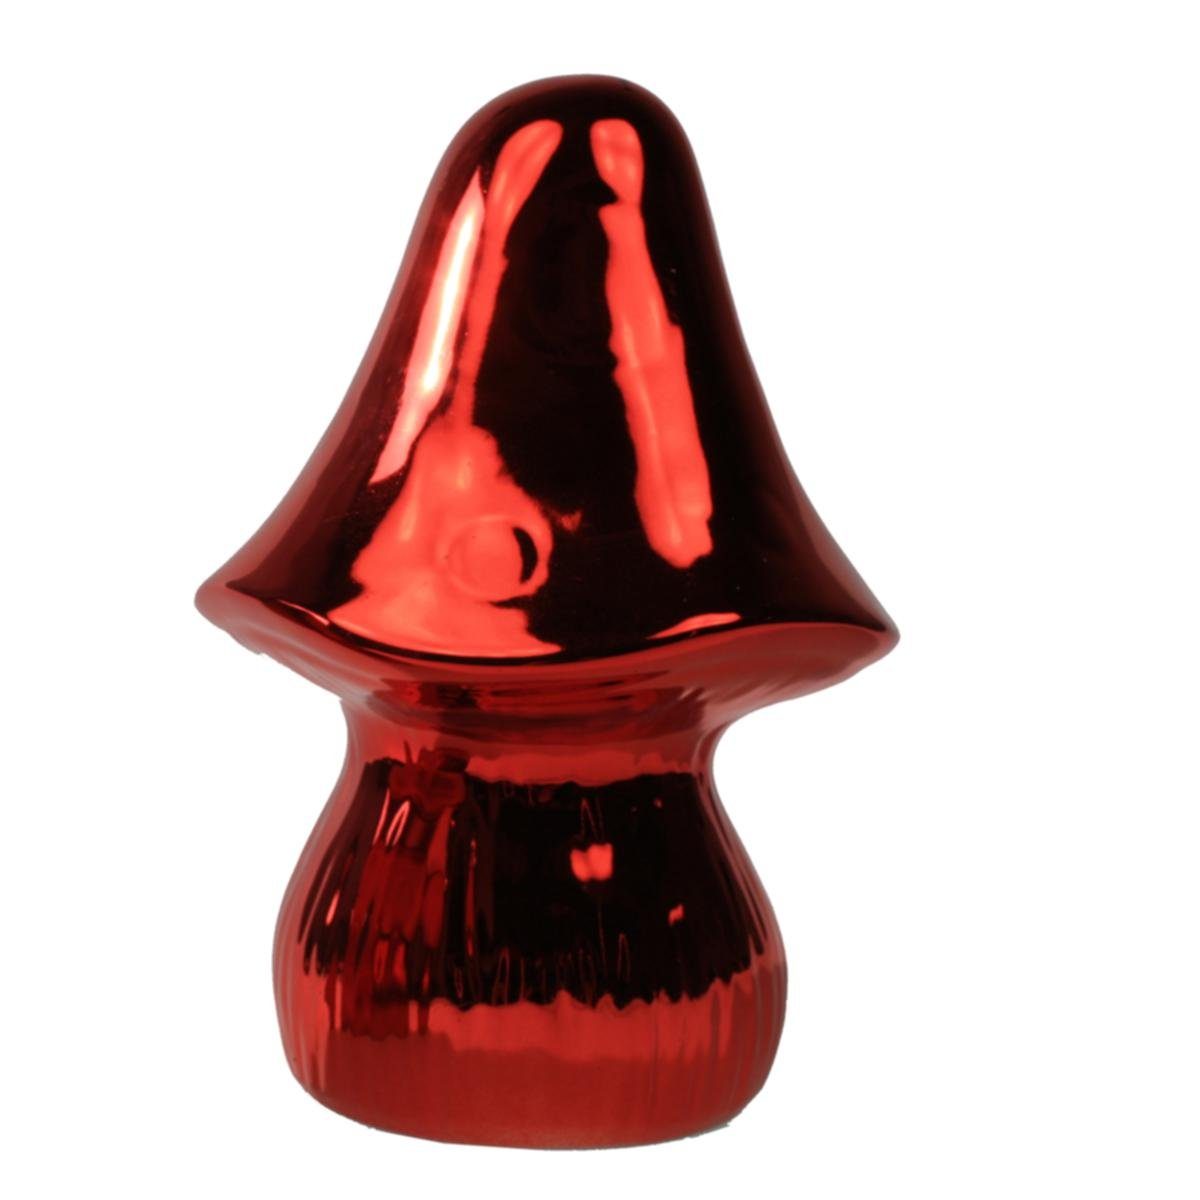 440s Dekofigur 440s Keramik-Pilz rot glänzend ca 15 cm H